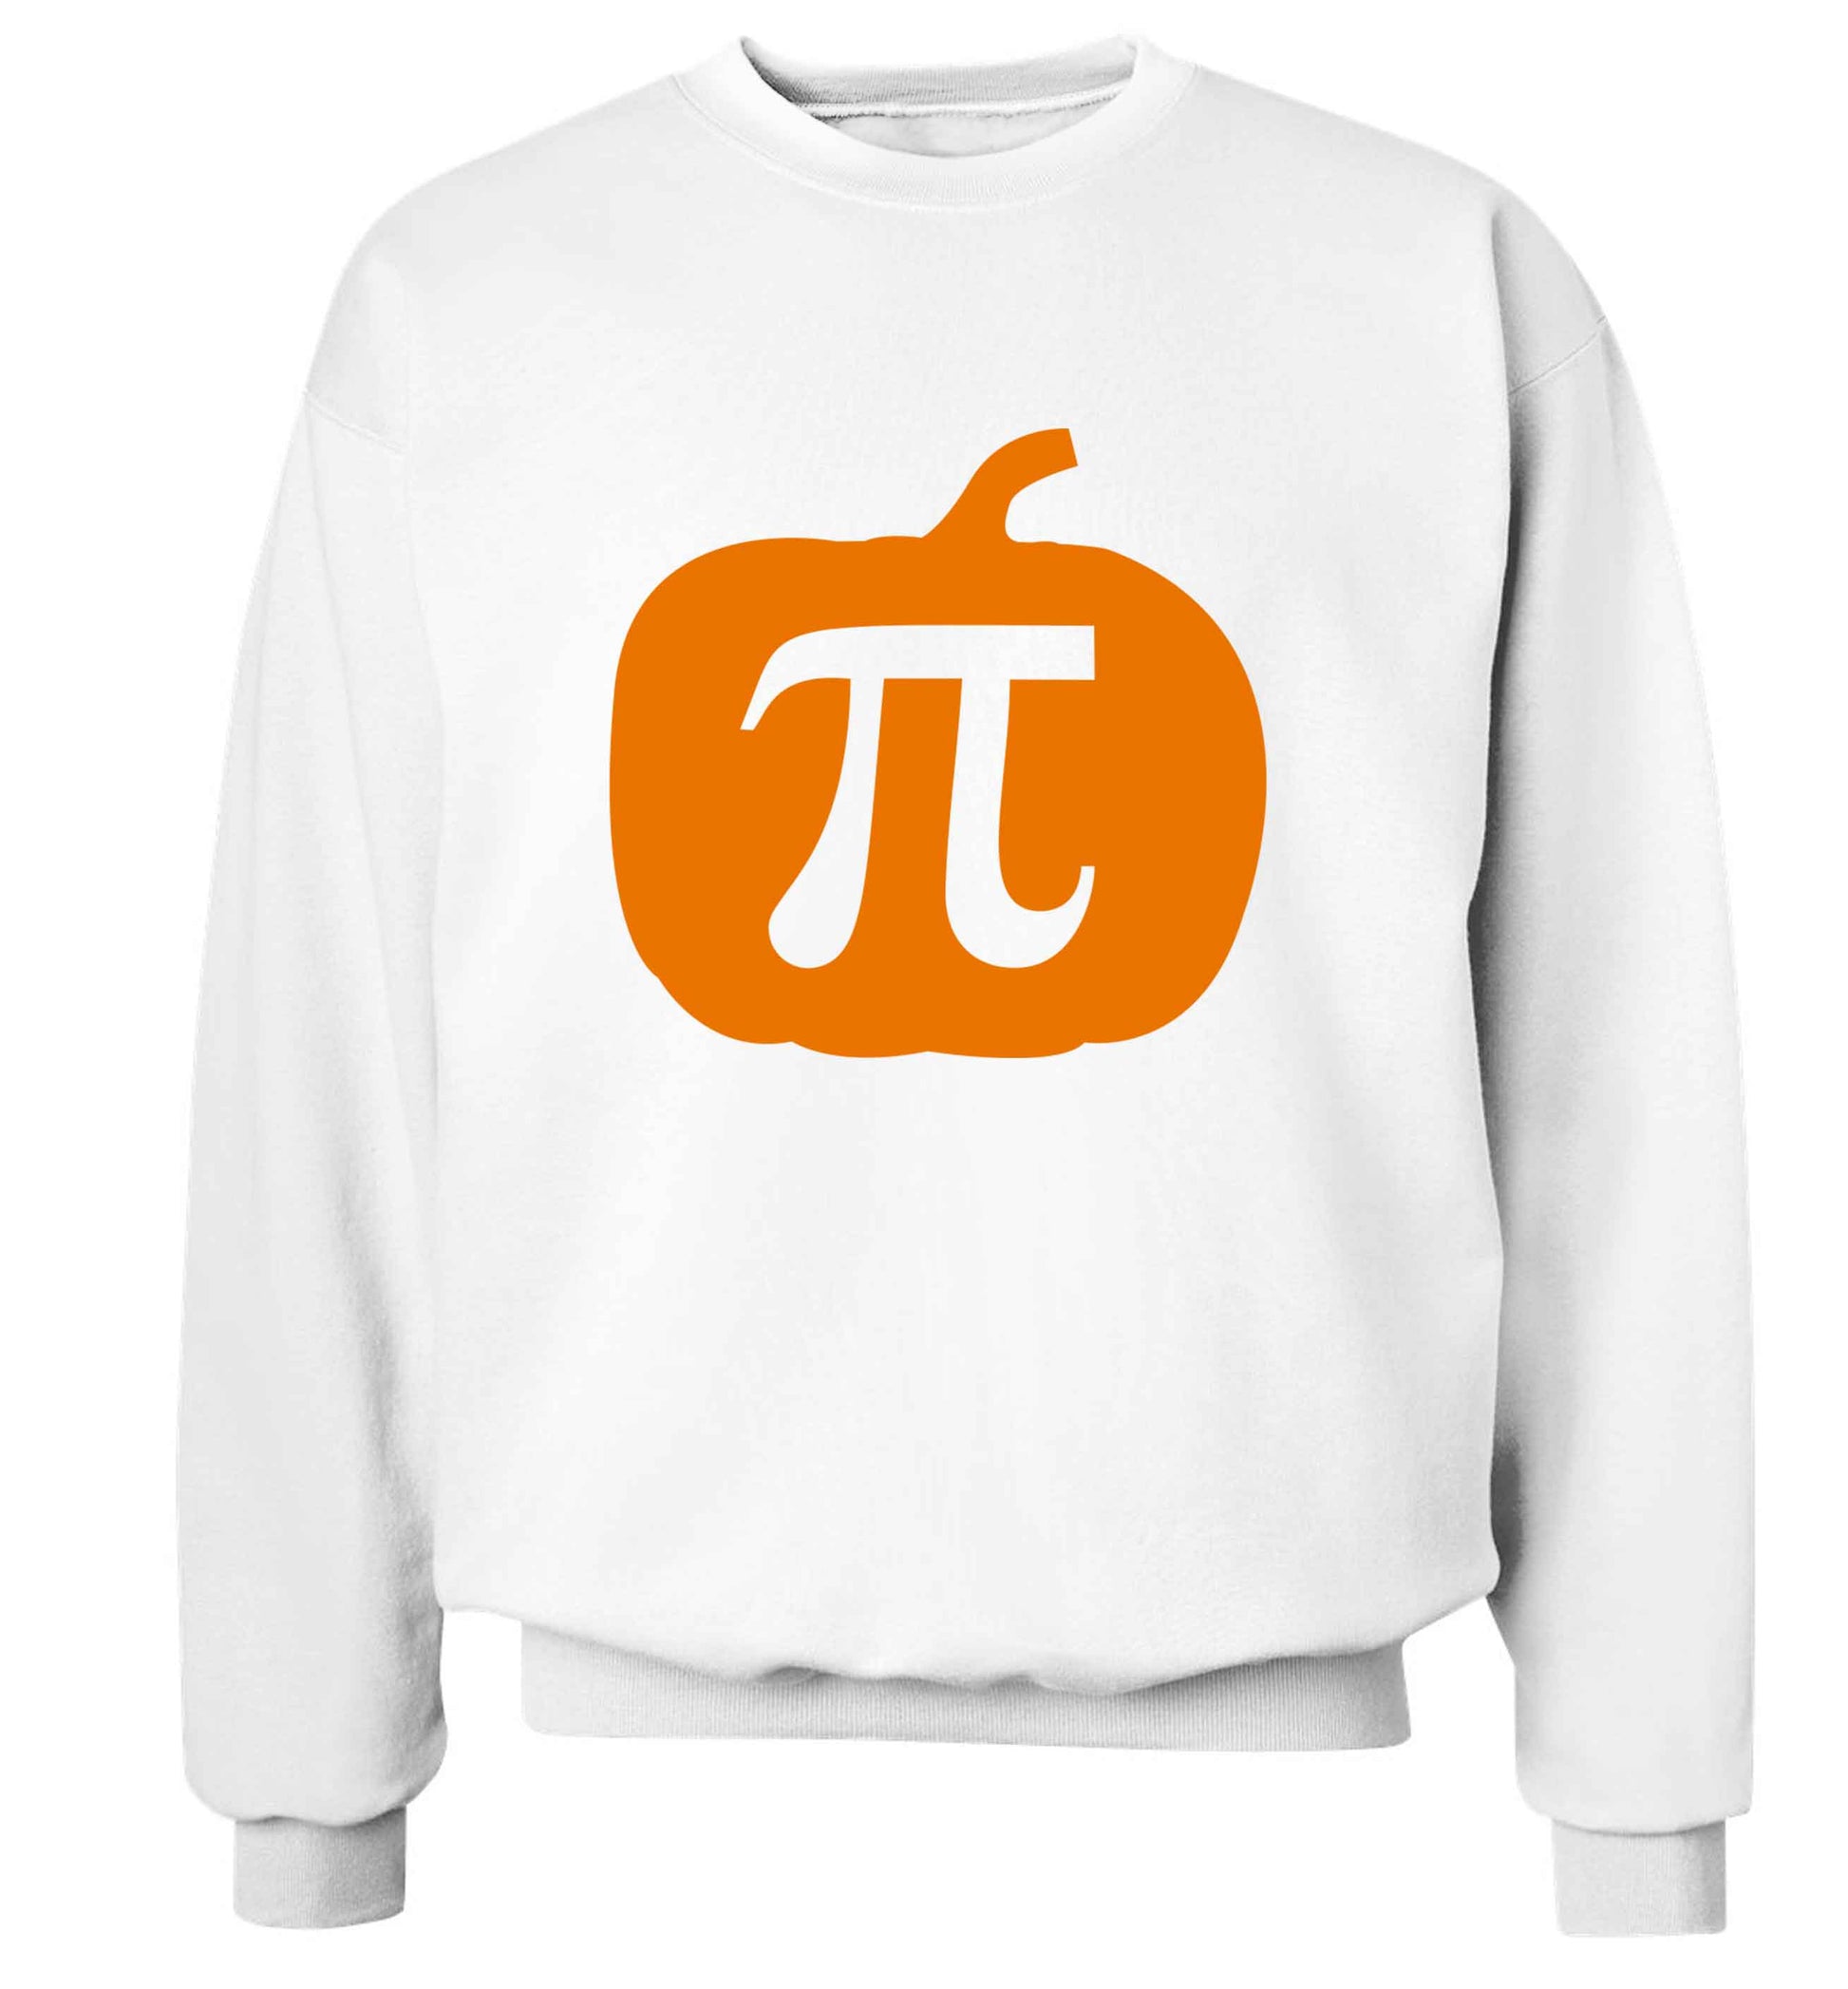 Pumpkin Pie adult's unisex white sweater 2XL